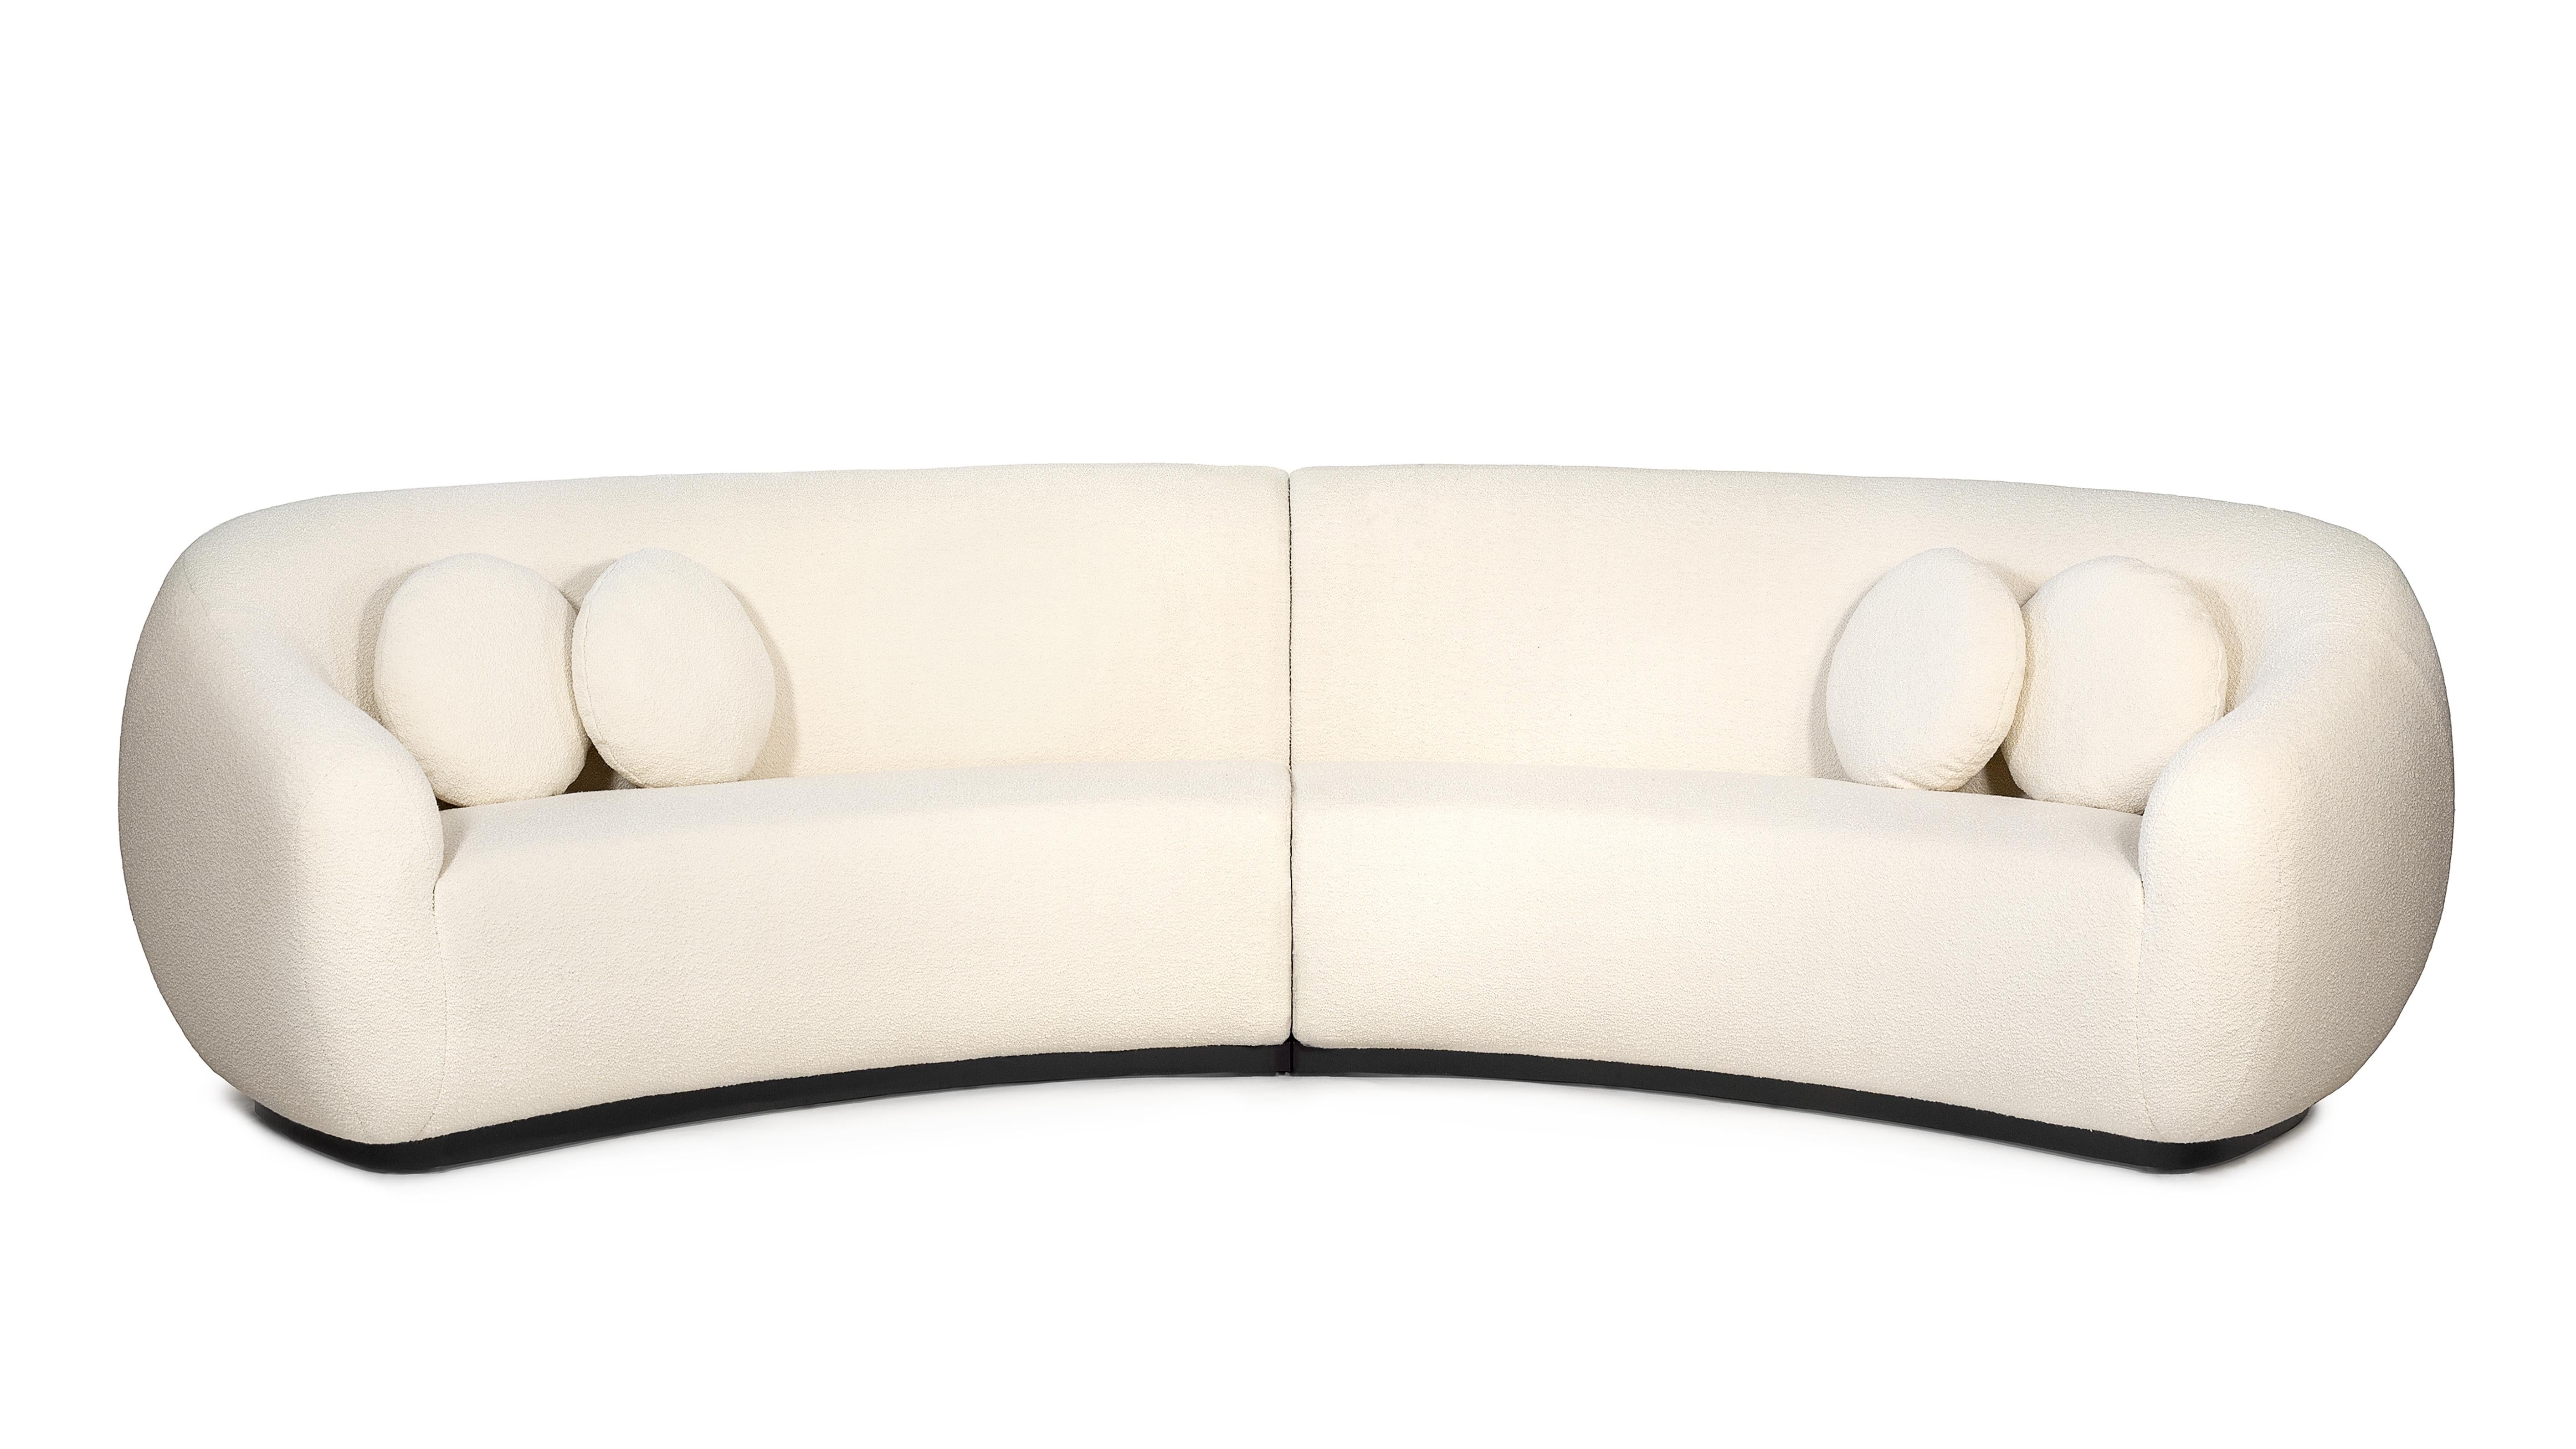 Niemeyer II, rundes Sofa von InsidherLand
Abmessungen: T 165 x B 350 x H 86 cm.
MATERIALIEN: Eiche dunkel, InsidherLand Lama Ref. 1 Stoff.
120 kg.
Erhältlich in verschiedenen Stoffen.

Das Rundsofa Niemeyer II ist nach dem brasilianischen